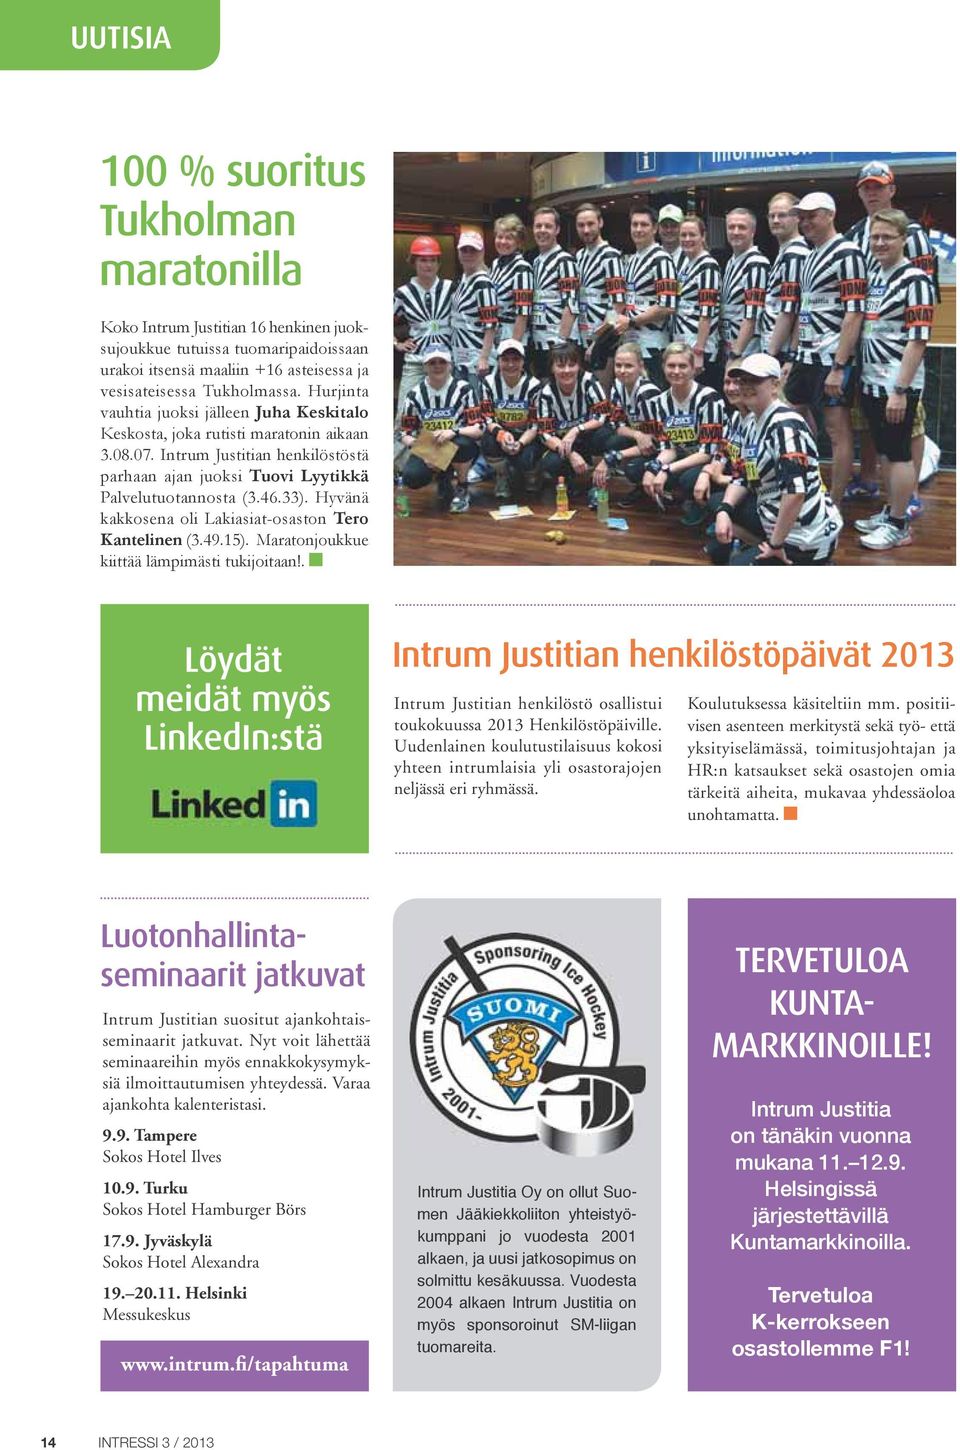 Hyvänä kakkosena oli Lakiasiat-osaston Tero Kantelinen (3.49.15). Maratonjoukkue kiittää lämpimästi tukijoitaan!